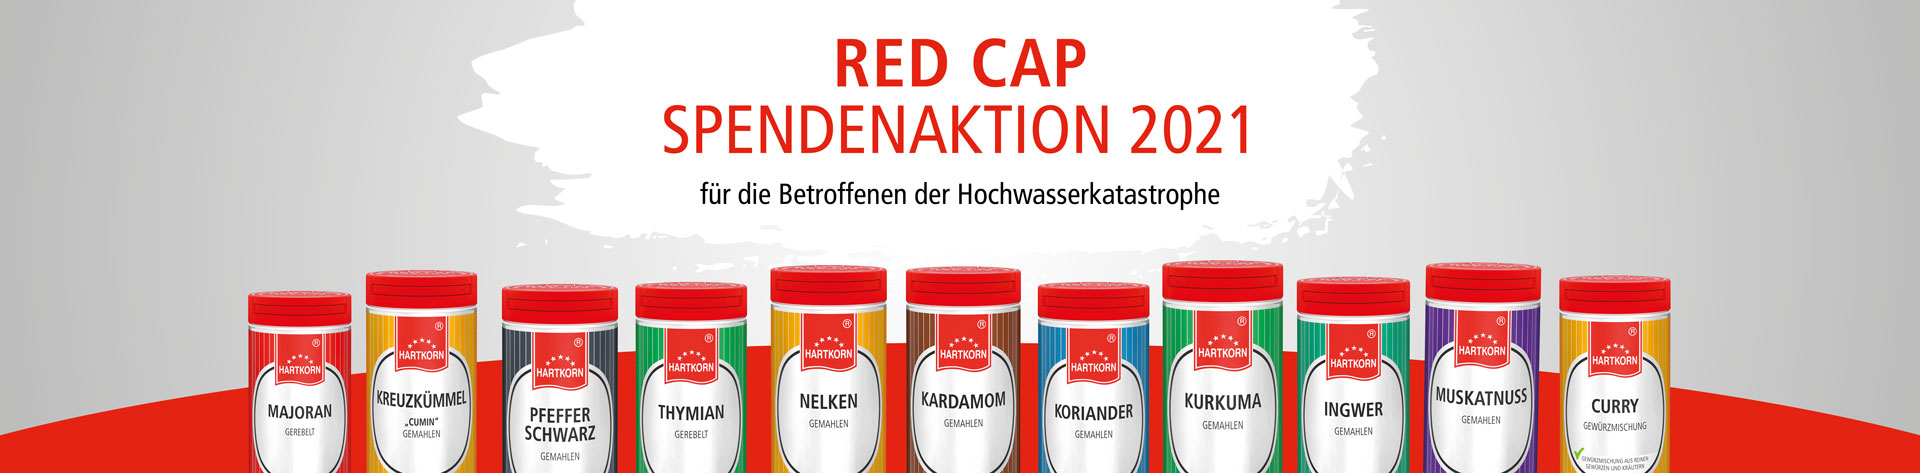 Red Cap - Spendenaktion 2021